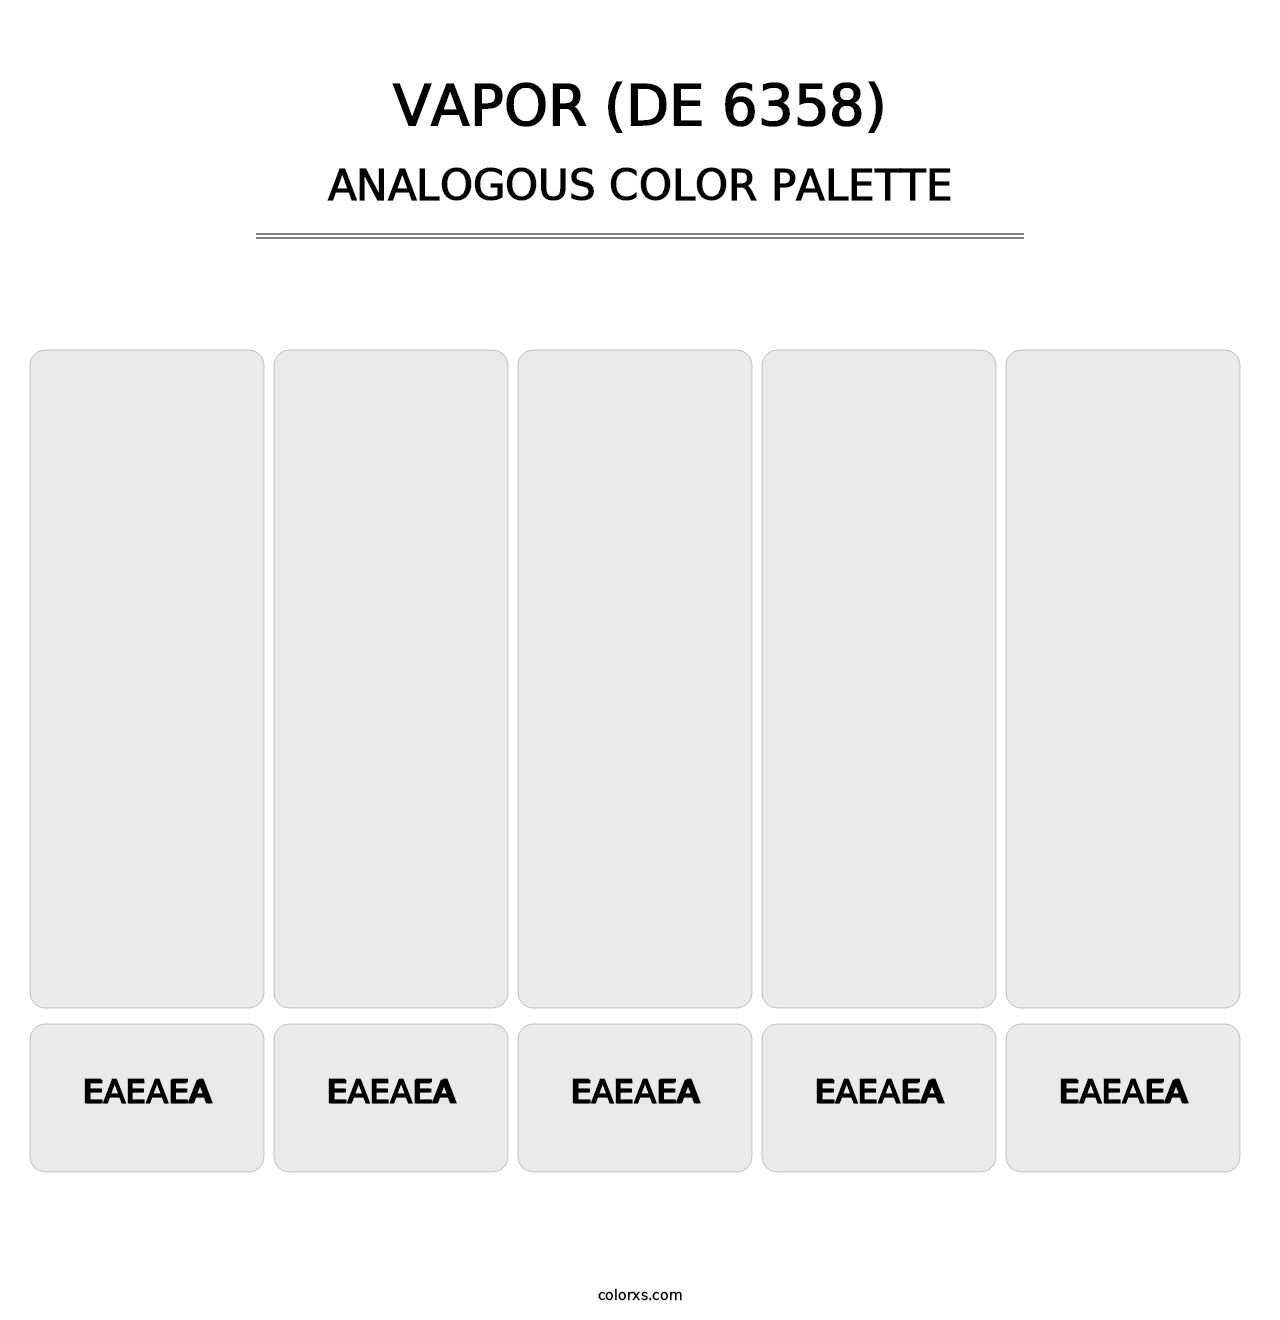 Vapor (DE 6358) - Analogous Color Palette